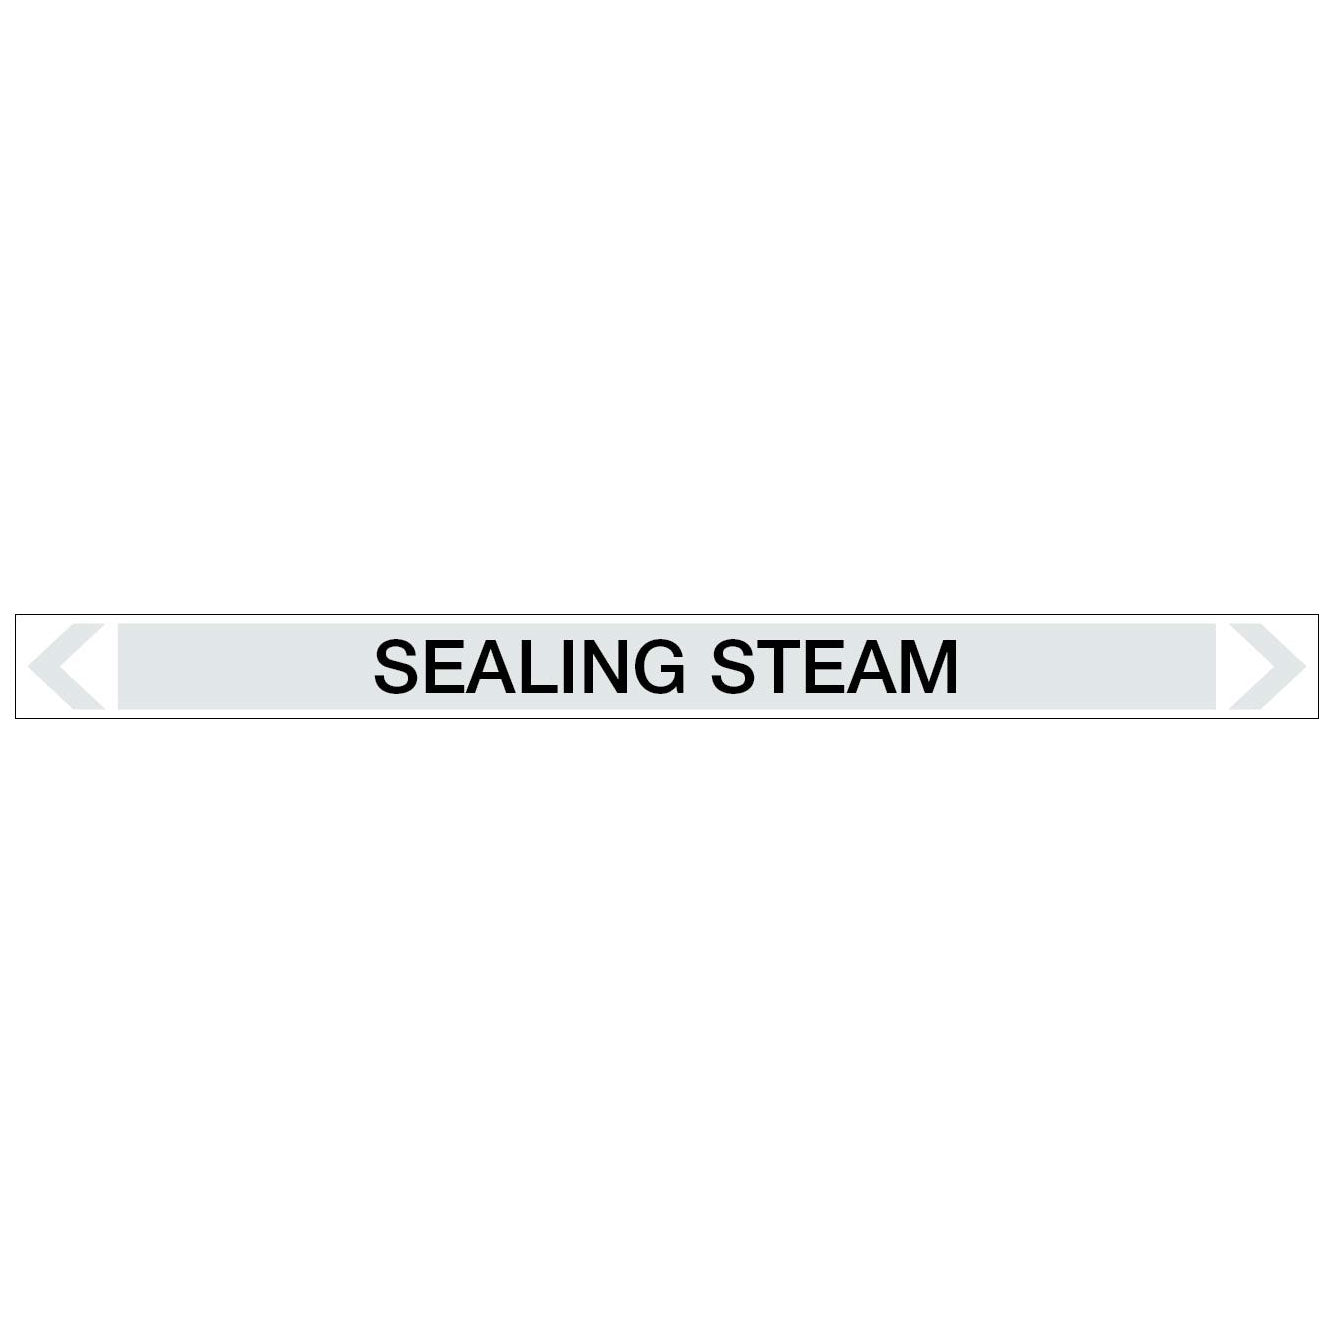 Steam - Sealing Steam - Pipe Marker Sticker